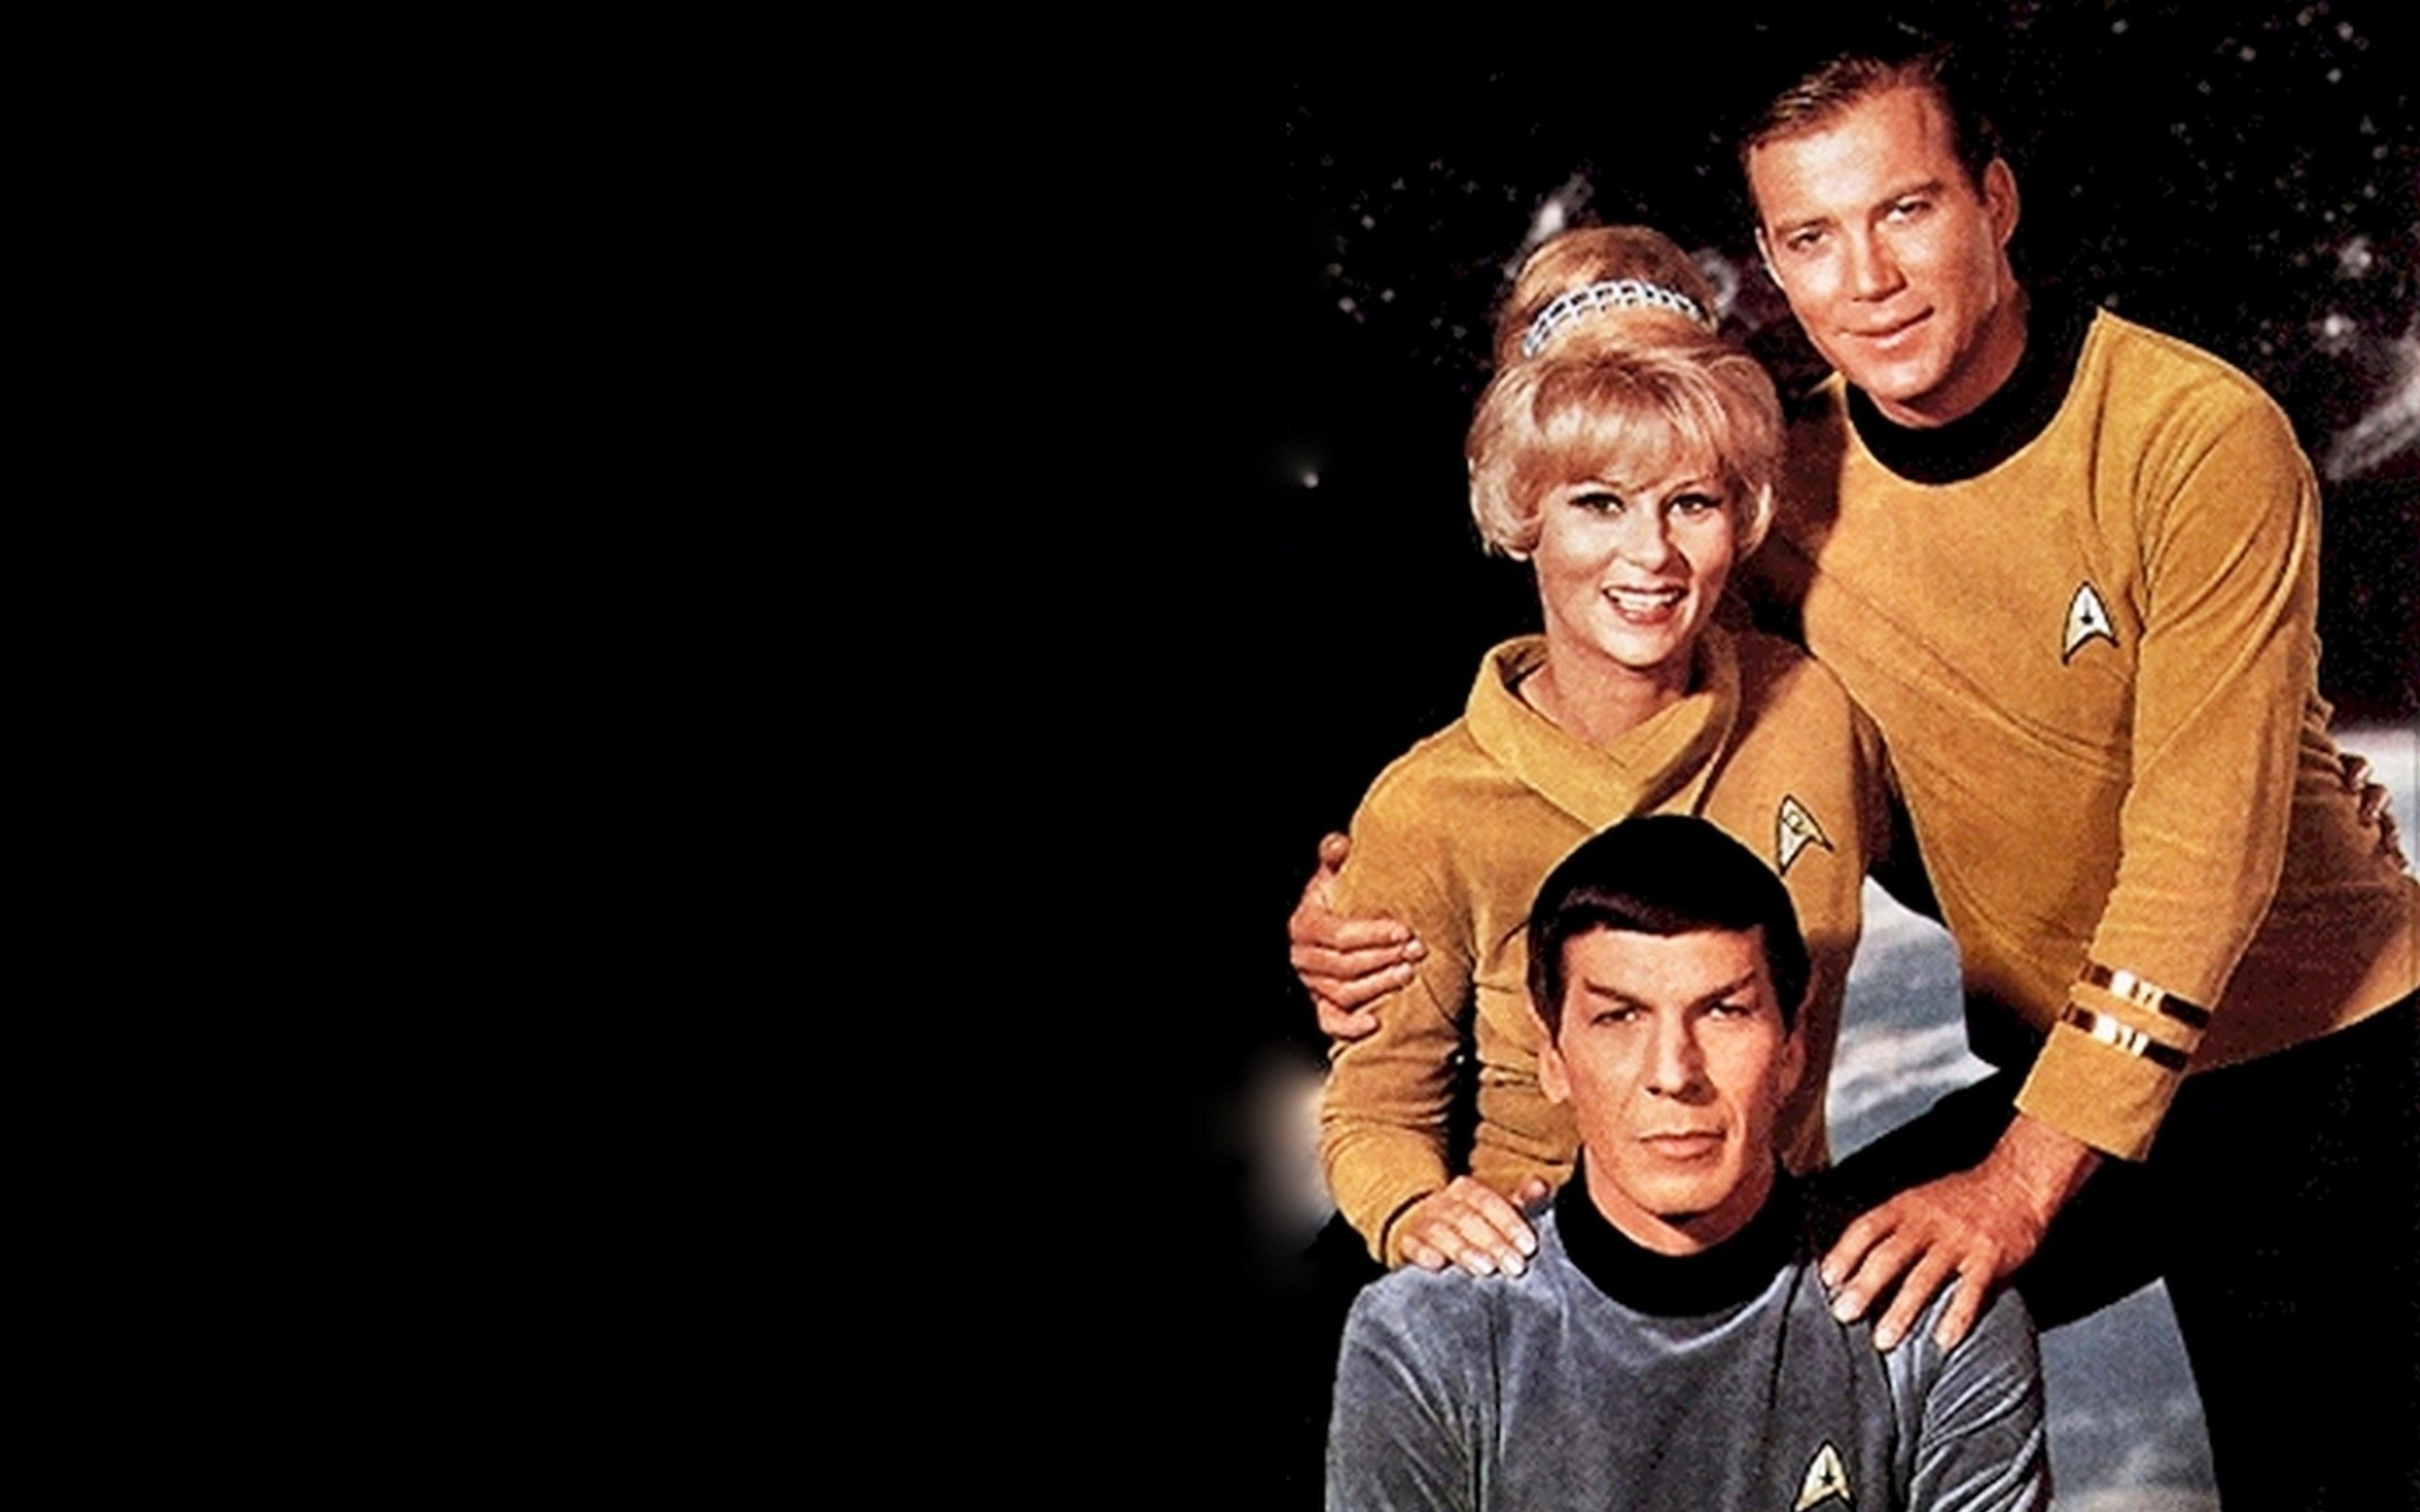 Original Star Trek Wallpaper. Star trek cast, Star trek tv, Star